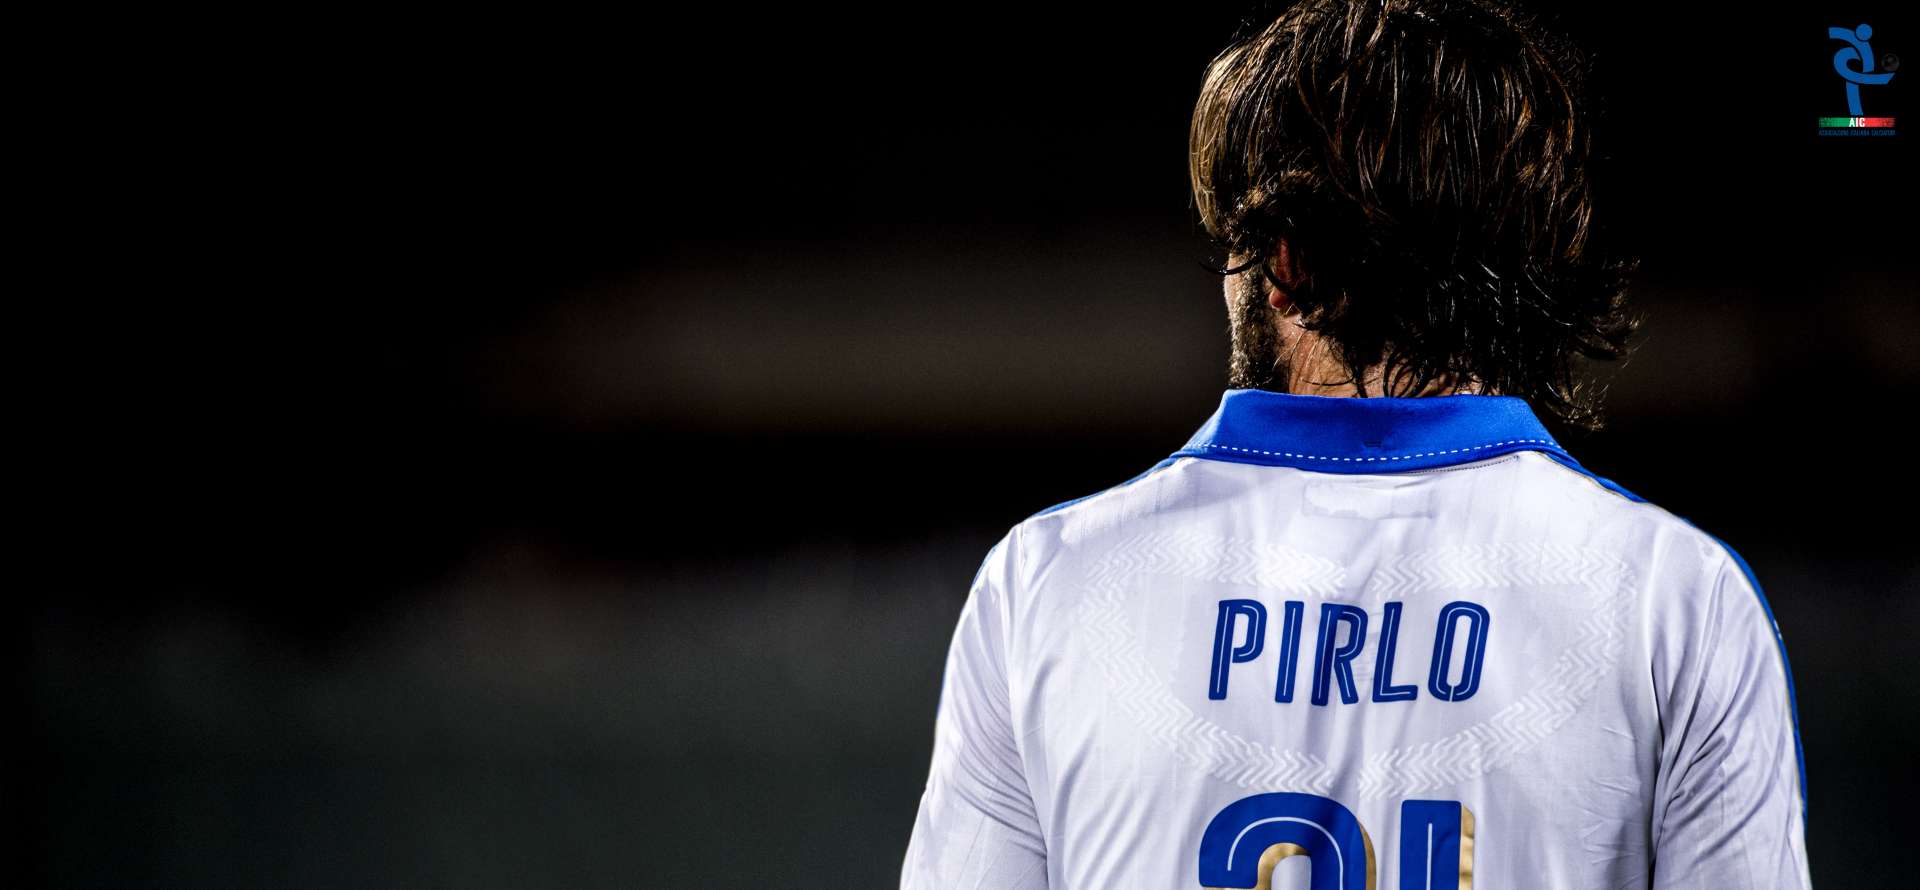 Andrea Pirlo, fine carriera, ap21, Pirlo, AIC, Associazione Italiana Calciatori